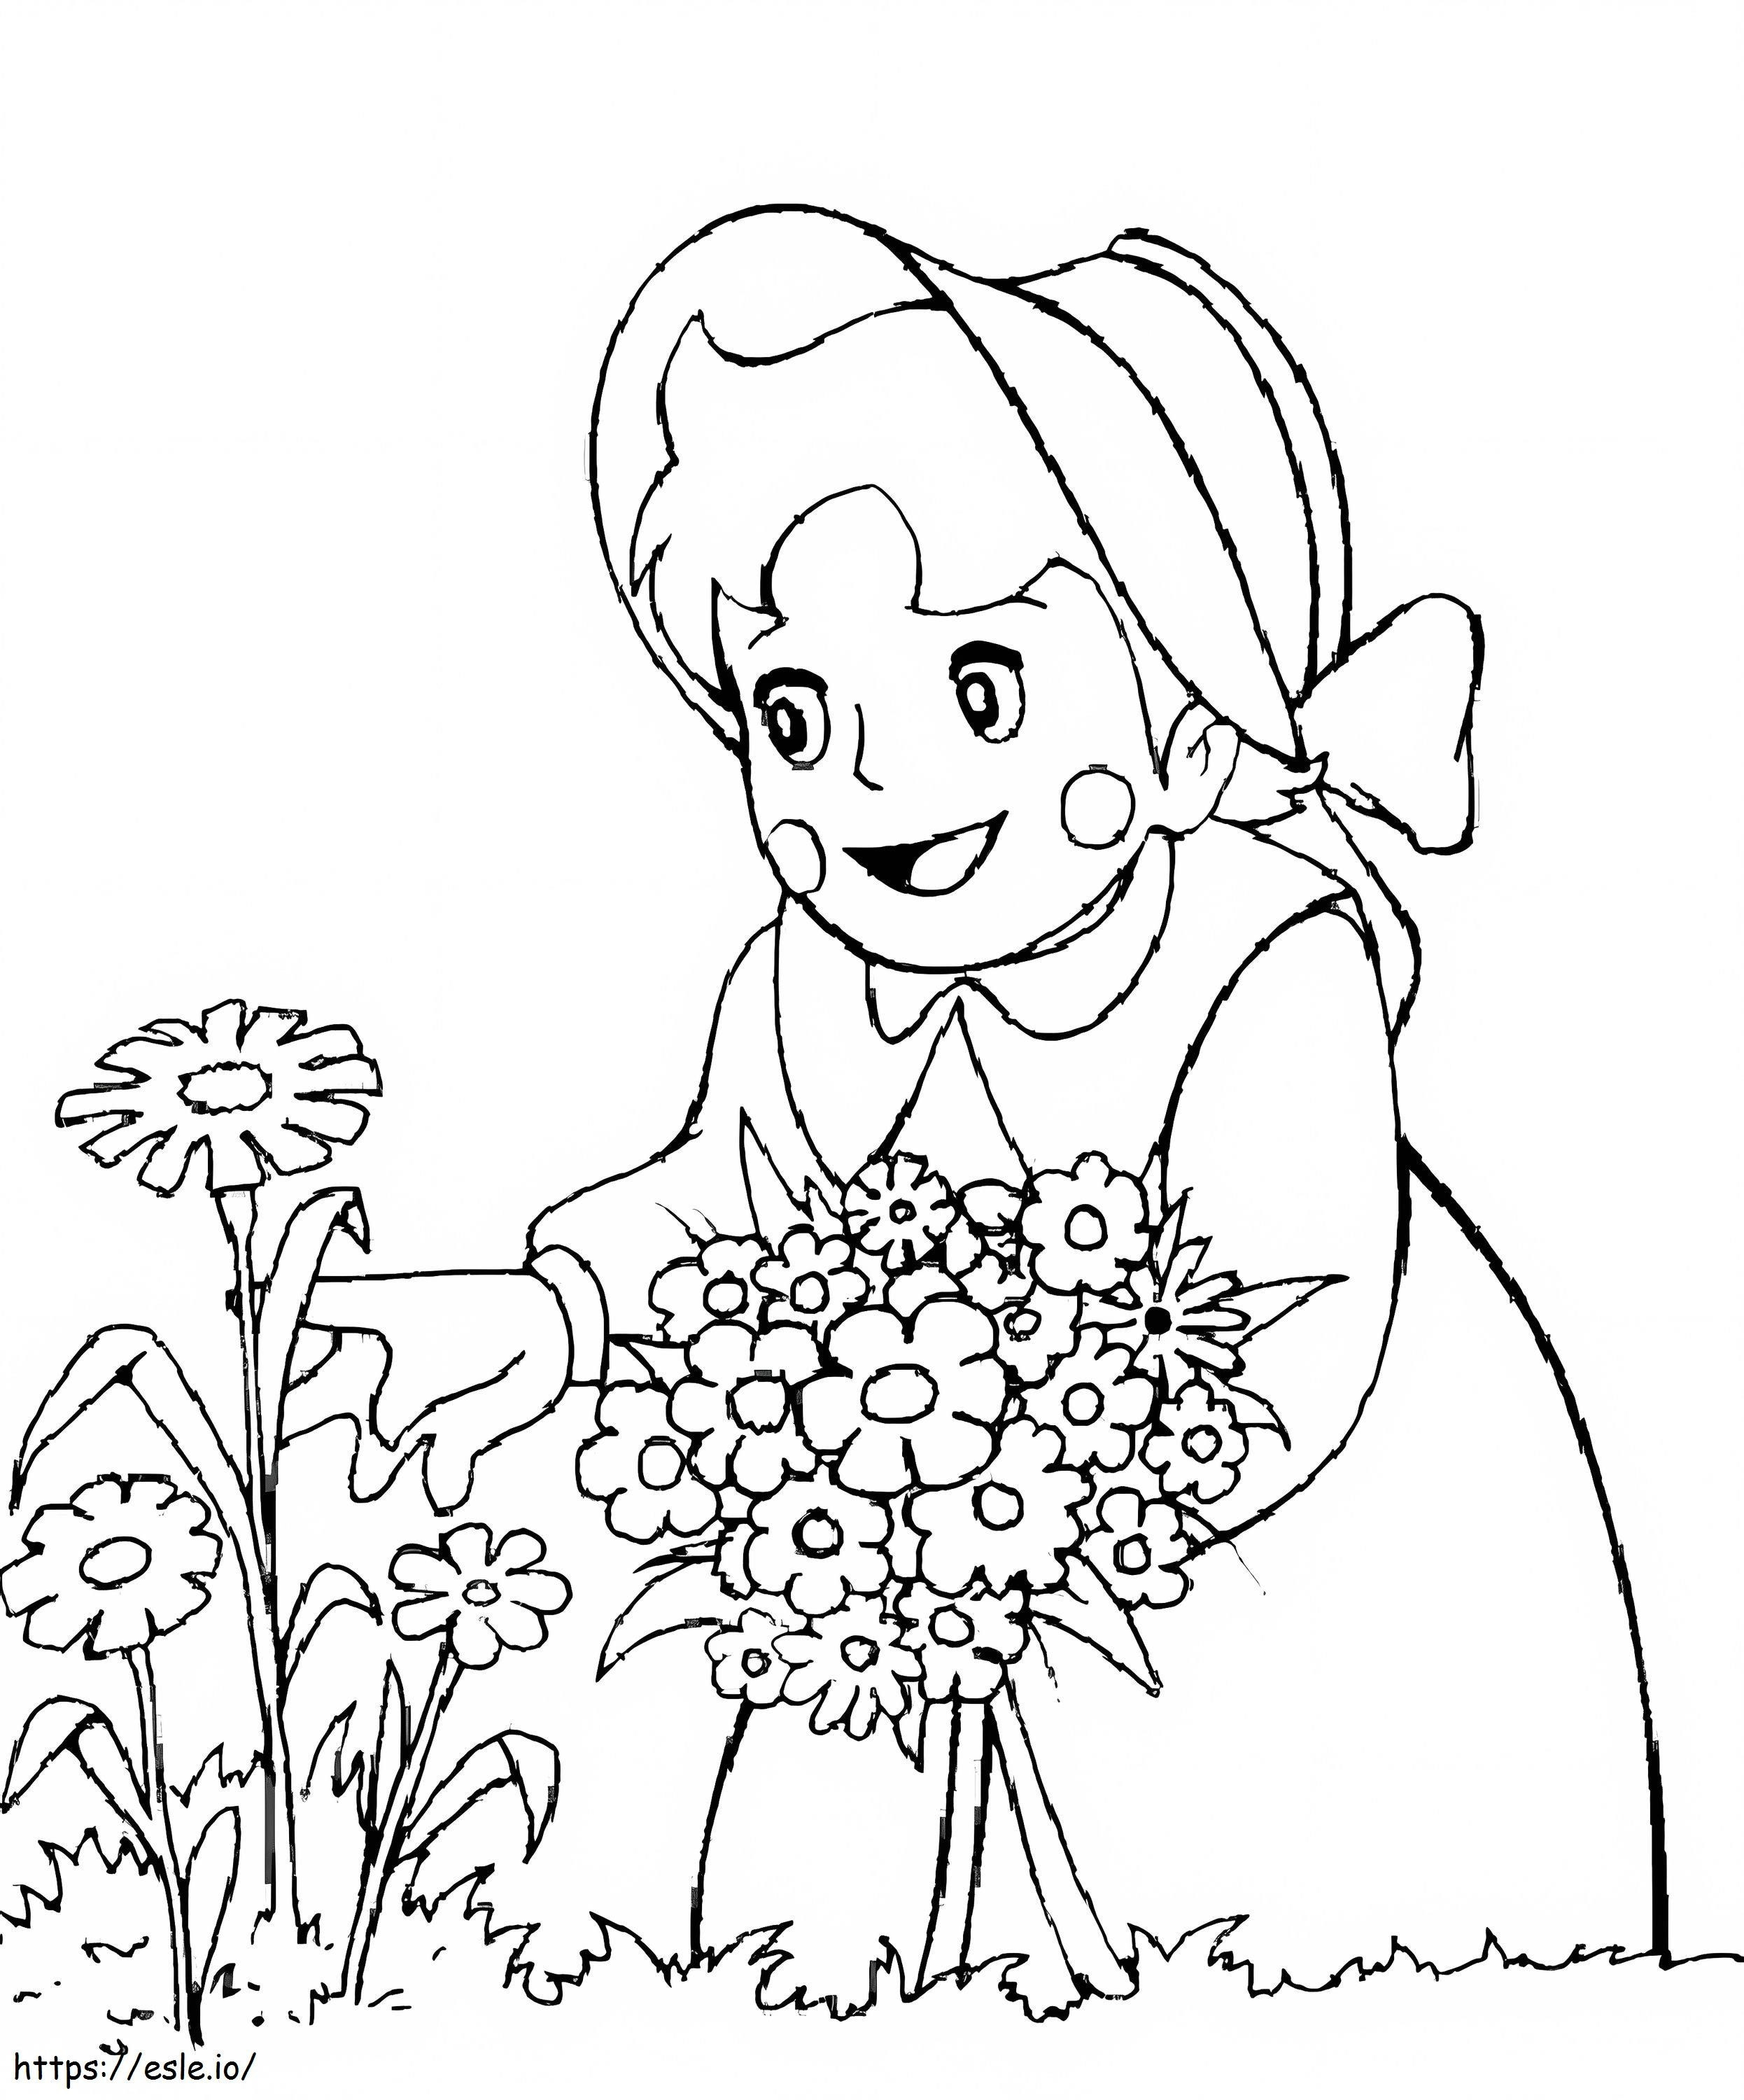 Heidi mit Blumen ausmalbilder